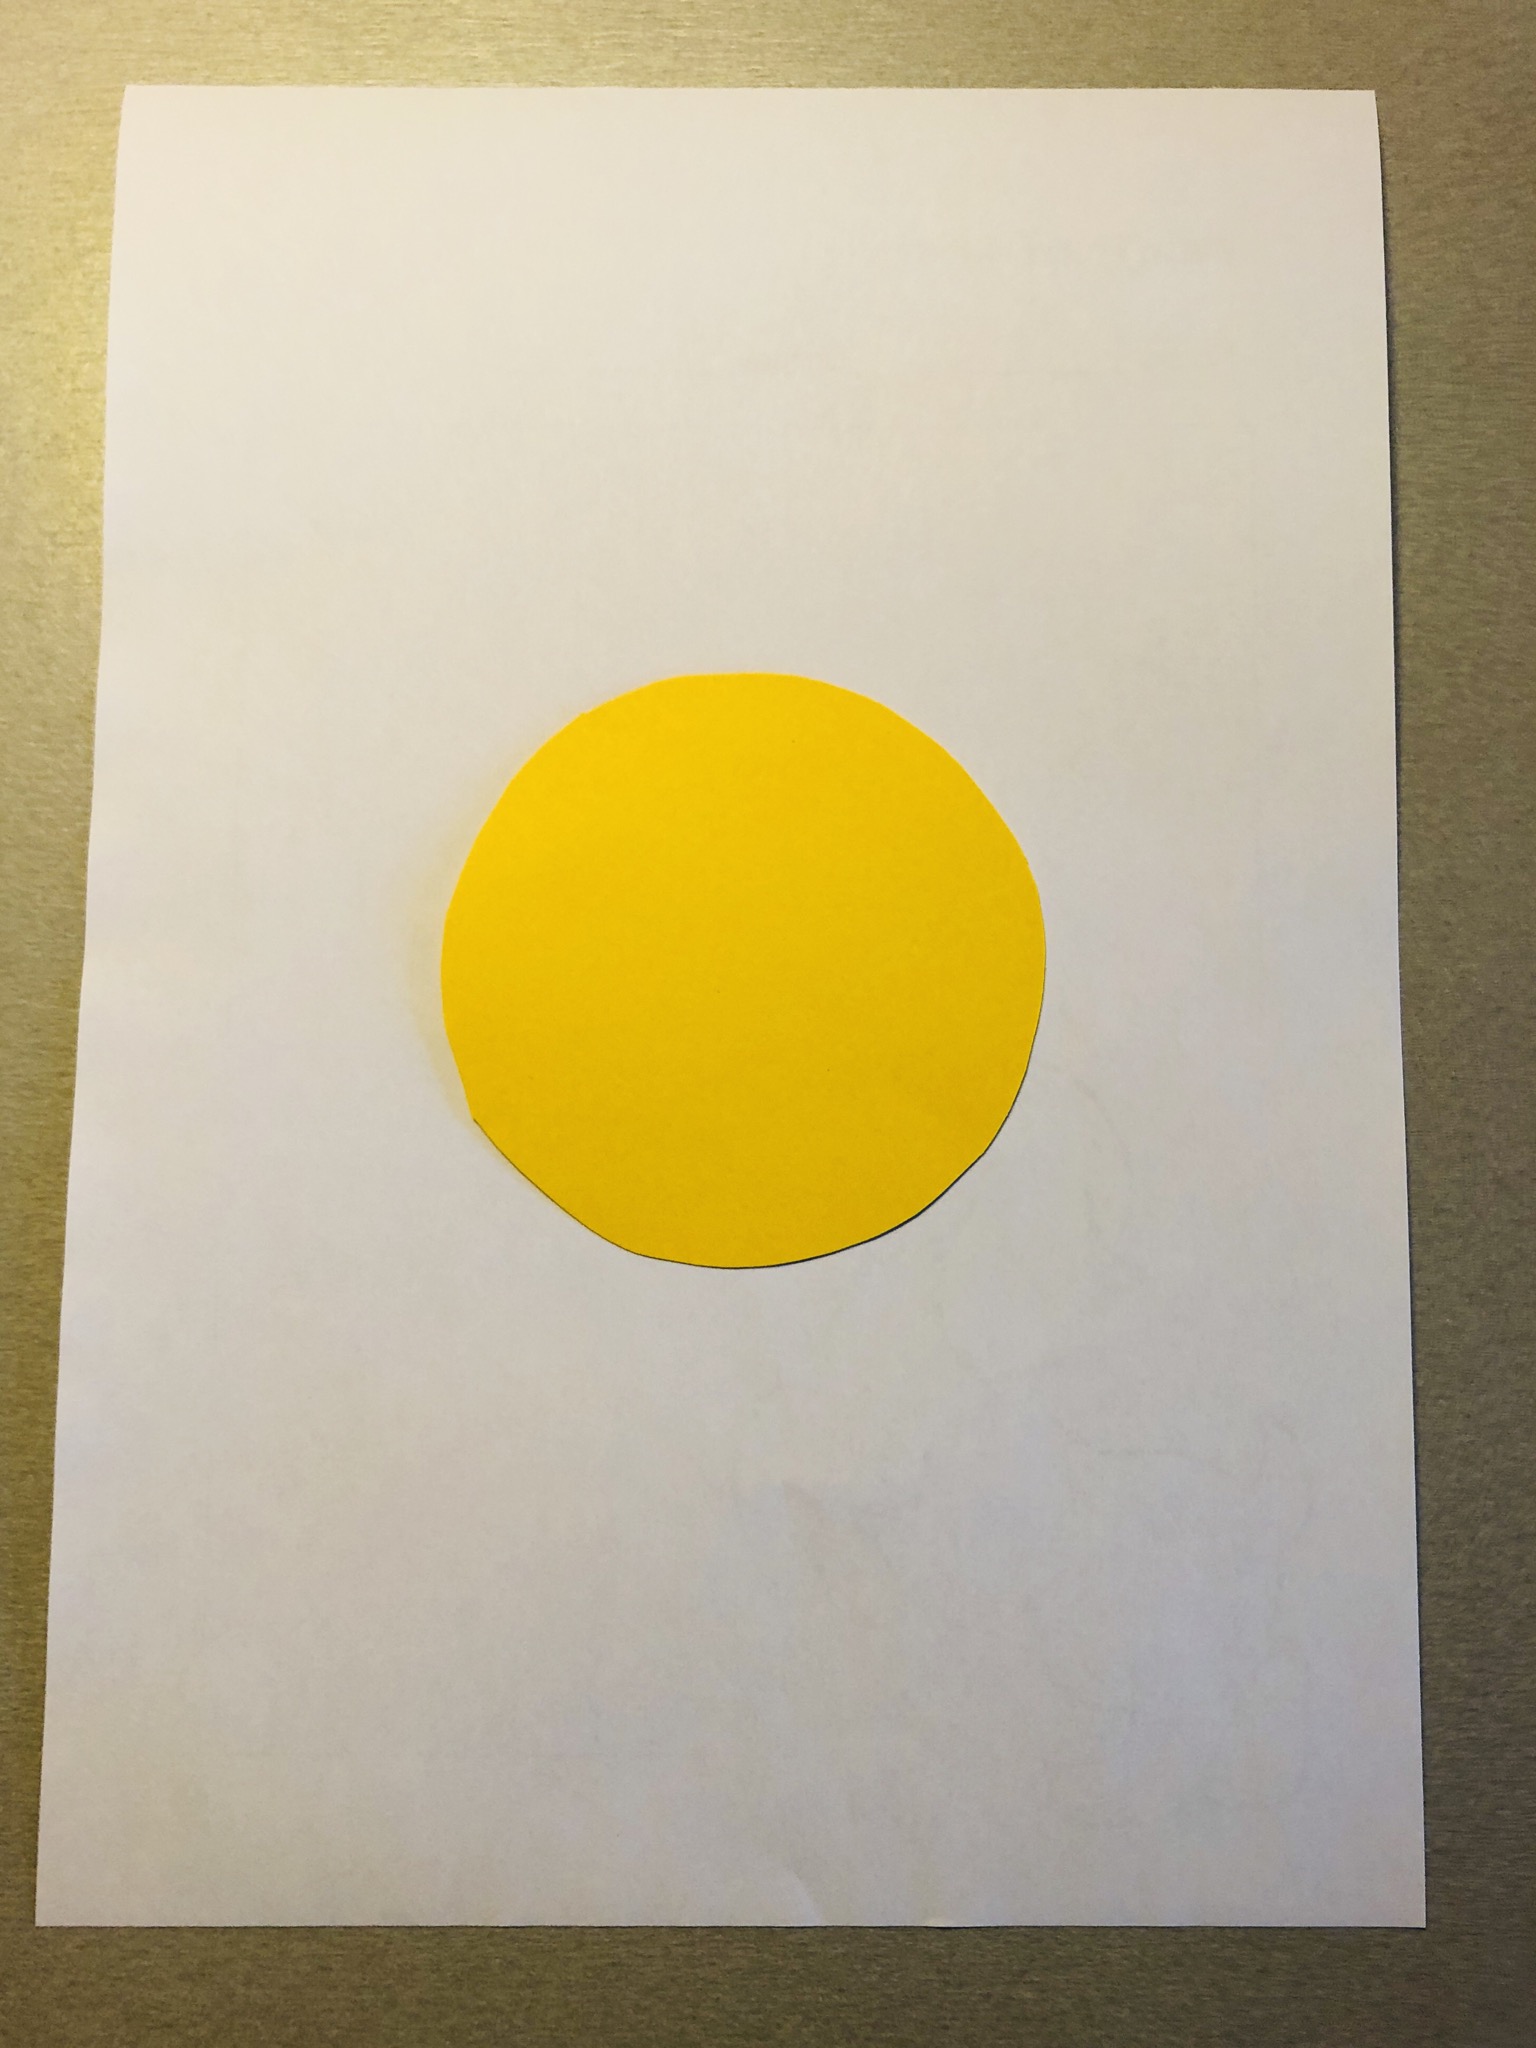 Bild zum Schritt 3 für die Kinder-Beschäftigung: 'Legt den gelben Tonpapier-Kreis auf das weiße DIN A4 Blatt.'